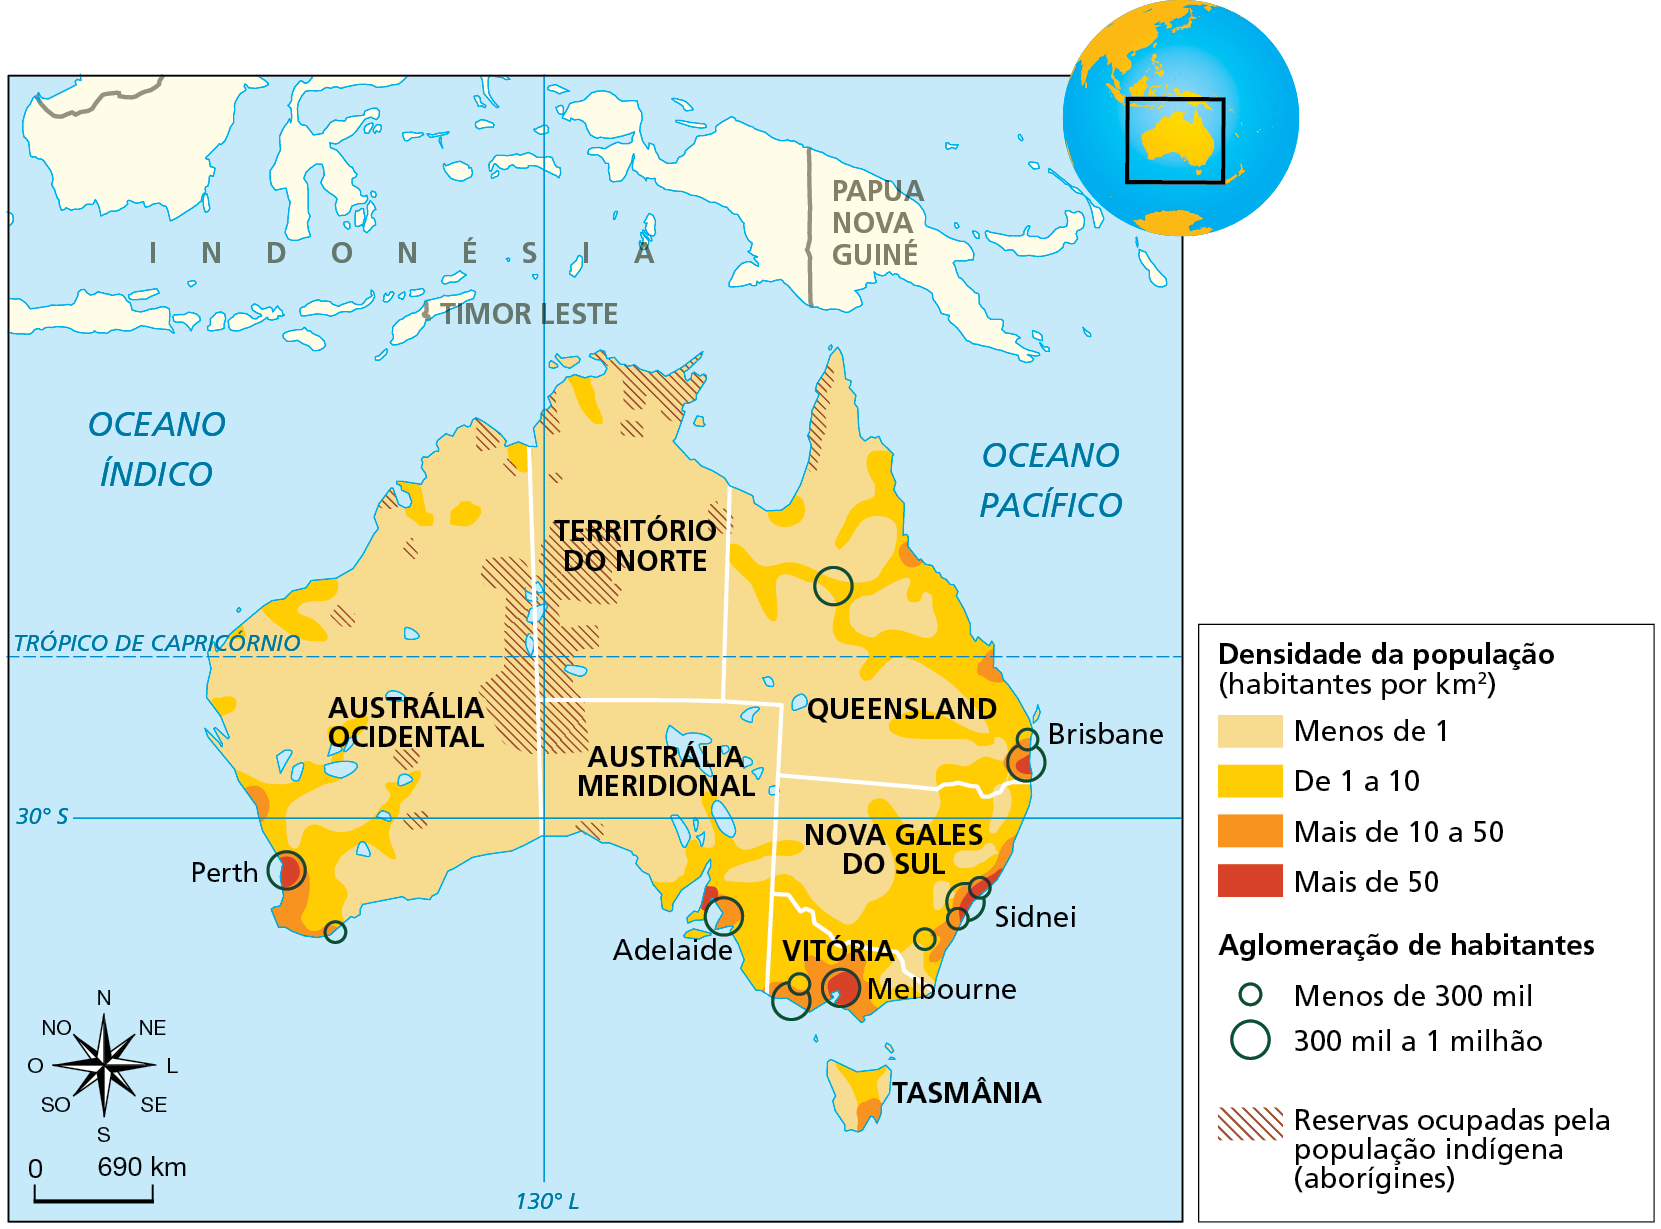 Mapa. Austrália: densidade demográfica e divisão político-administrativa, 2020. Mapa do território australiano representando a densidade populacional por meio de cores.  
Divisão político-administrativa:
Austrália Ocidental: abrange a parte oeste do país; Território do Norte: abrange a porção norte da parte central da Austrália; Austrália Meridional: abrange a porção sul da parte central do país; Queensland: abrange a porção norte da parte oeste da Austrália; Nova Gales do Sul: abrange a maior porção do sul da parte leste do país; Vitória: abrange o extremo sul da parte leste da Austrália; Tasmânia: ilha situada ao sul da parte leste da Austrália. 


Densidade da população (habitantes por quilômetro quadrado): 
Menos de 1: toda a porção central do território; porção oeste, exceto alguns trechos da costa oeste e do sudoeste; interior da porção leste;  porção oeste da Tasmânia. 
De 1 a 10: alguns trechos da costa oeste, principalmente no sudoeste; faixa litorânea no nordeste da porção leste; sul da porção leste; norte da Tasmânia. 
Mais de 10 a 50: pequenas áreas no sudoeste e sul da porção oeste; pequenas áreas pela costa leste, principalmente no sudeste e sul da porção leste; sudeste da Tasmânia.
Mais de 50: pequena área no sudoeste da porção oeste, onde está indicada a cidade de Perth; pequena área no sul da porção leste, onde está indicado Melbourne; pequeno trecho na costa leste e na costa nordeste, onde está indicada a cidade de Sidnei. 
Aglomeração de habitantes:  
Menos de 300 mil: sul da costa oeste; sul e nordeste da porção leste da Austrália; costa leste, inde está indicada a cidade de Brisbane. 
300 mil a 1 milhão: cidade de Perth, no sudoeste da porção oeste; sul da porção leste, onde estão indicadas as cidades de Adelaide, Melbourne e Sidnei; na costa leste, onde está indiada a cidade de Brisbane.  
Reservas ocupadas pela população indígena (aborígines): parte central, abrangendo áreas entre o Território do Norte, Austrália Ocidental e Austrália Meridional; trechos espalhados próximos à costa oeste, norte e sul do território australiano.
Abaixo, rosa dos ventos e escala de 0 a 690 quilômetros.